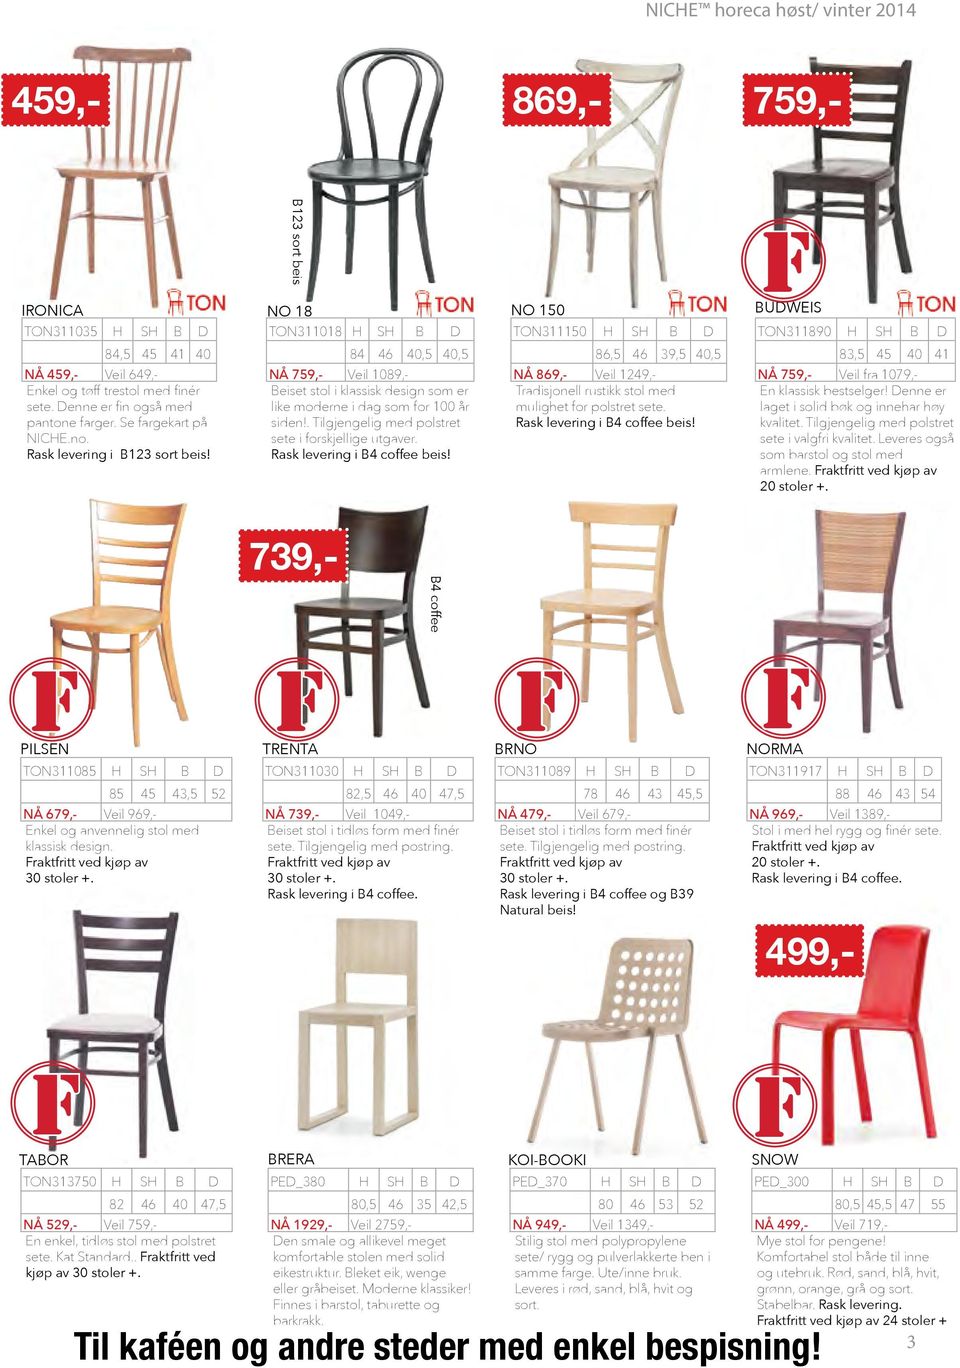 84 46 40,5 40,5 NÅ 759,- Veil 1089,- Beiset stol i klassisk design som er like moderne i dag som for 100 år siden!. Tilgjengelig med polstret sete i forskjellige utgaver.